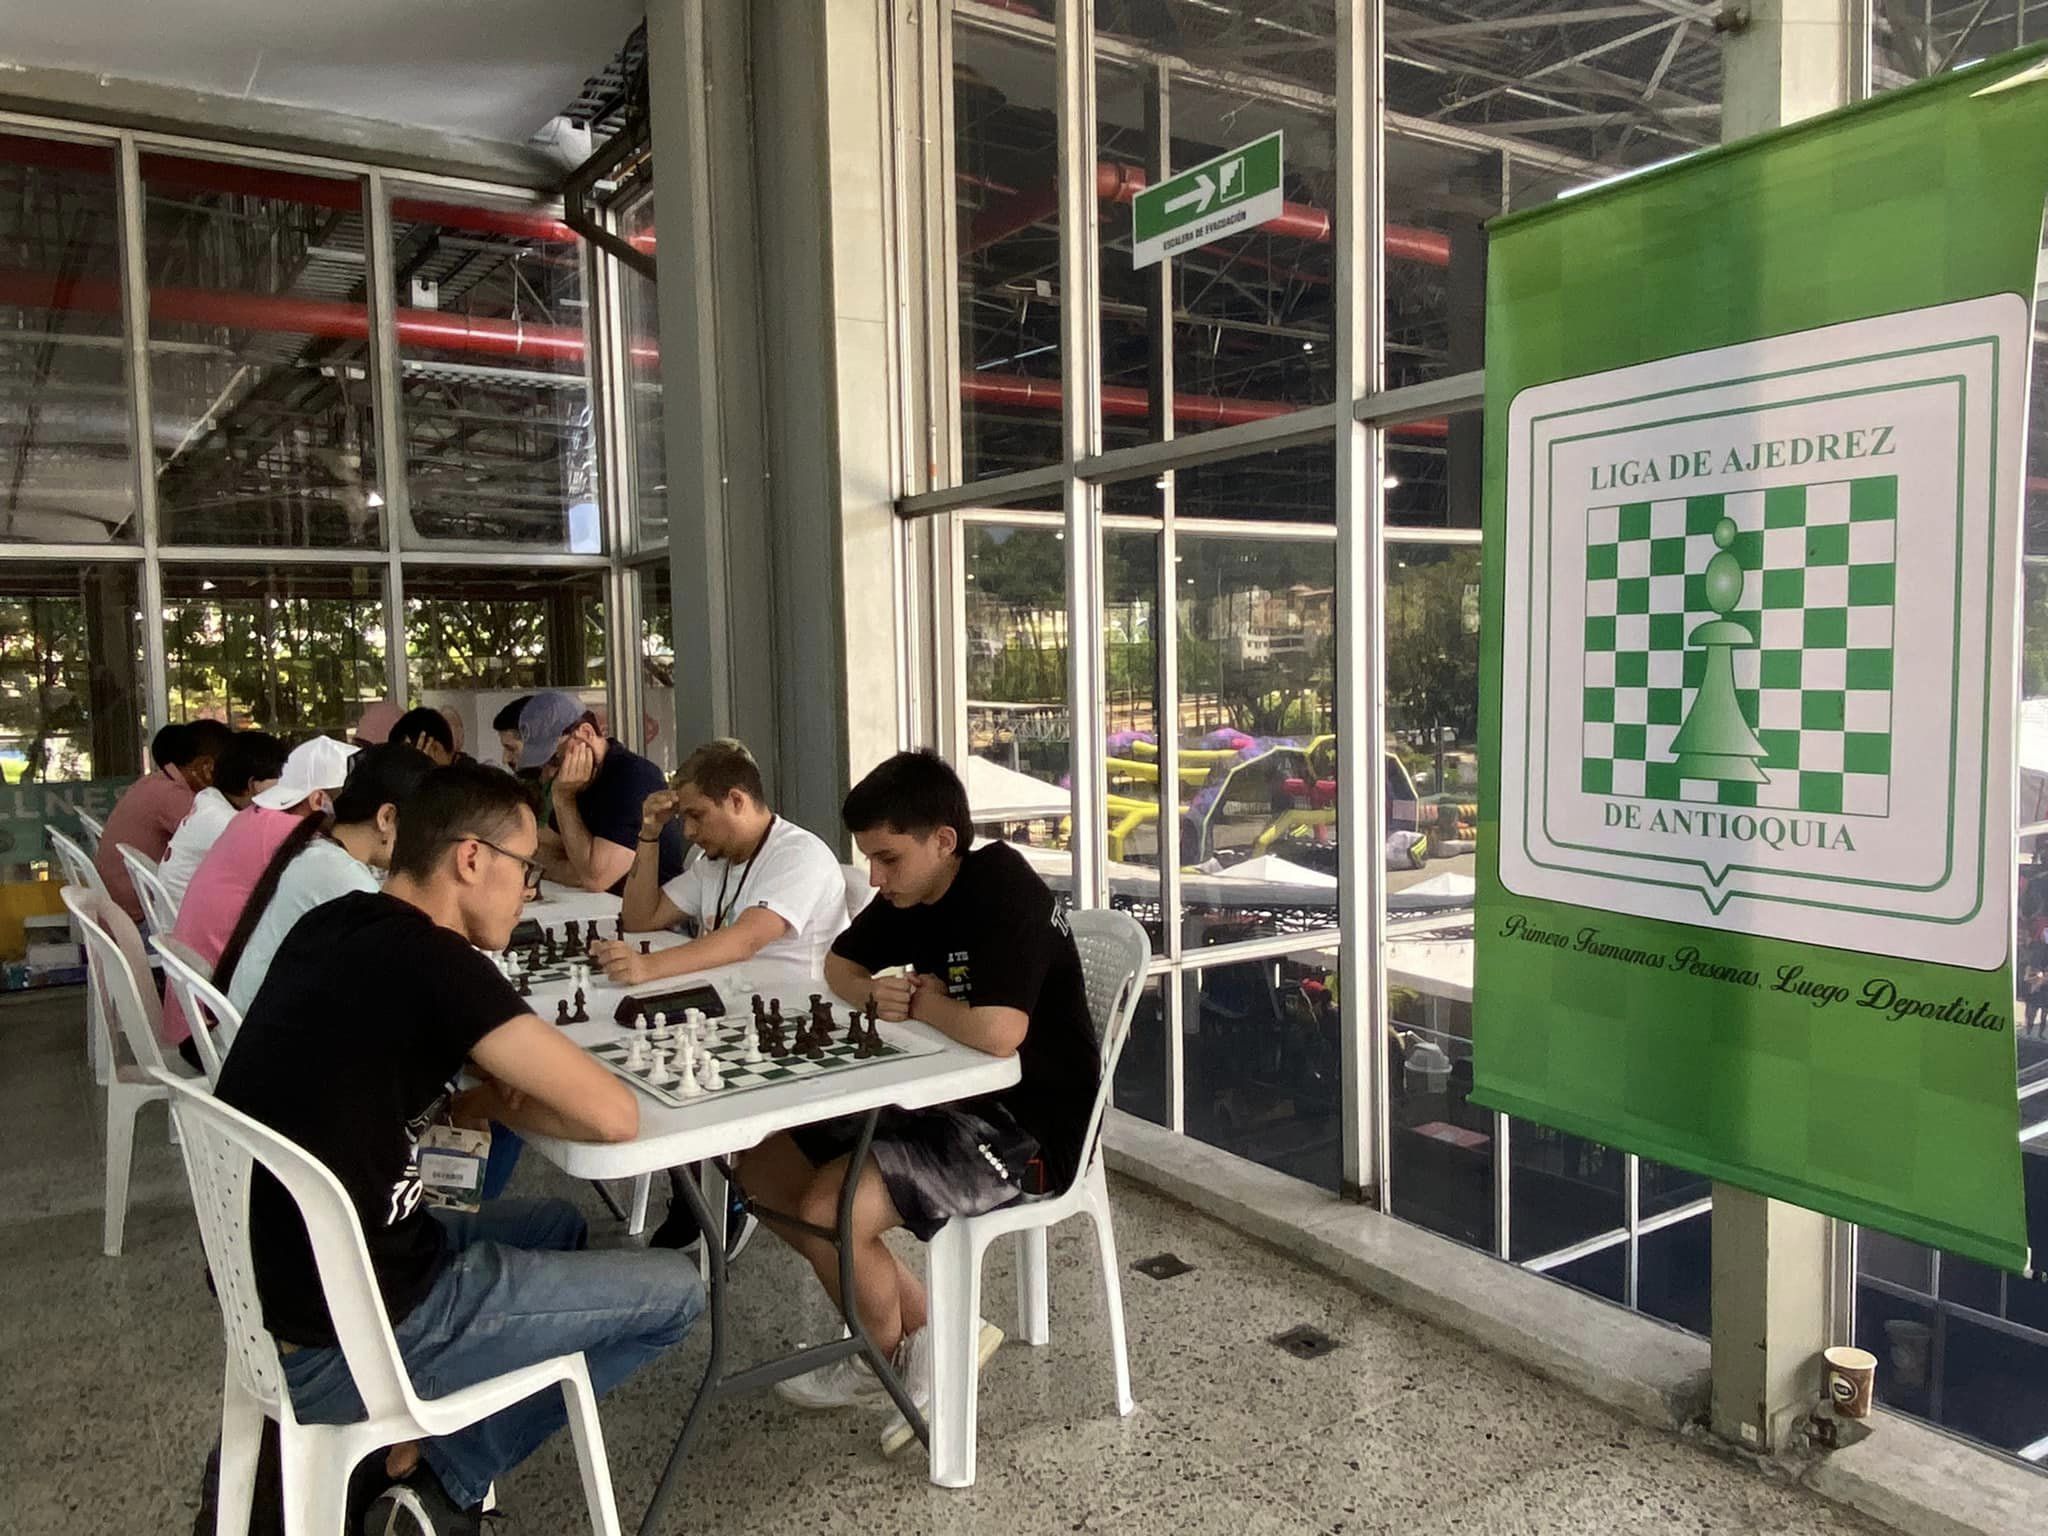 Dos campeonatos de ajedrez albergarán la Semana Santa